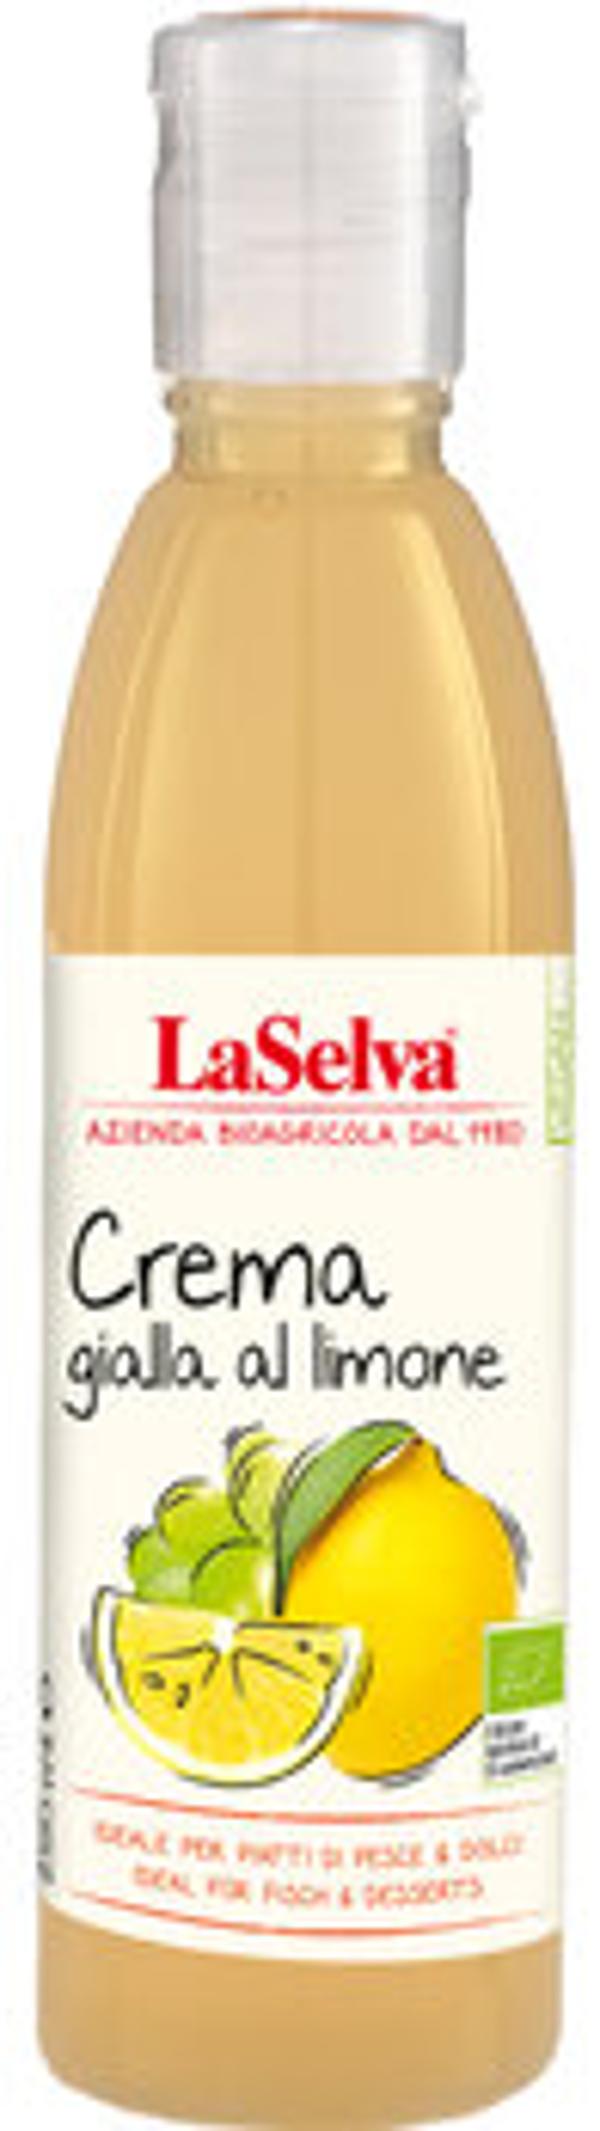 Produktfoto zu Helle Creme mit Zitrone Condimento_Traubenmost 250ml